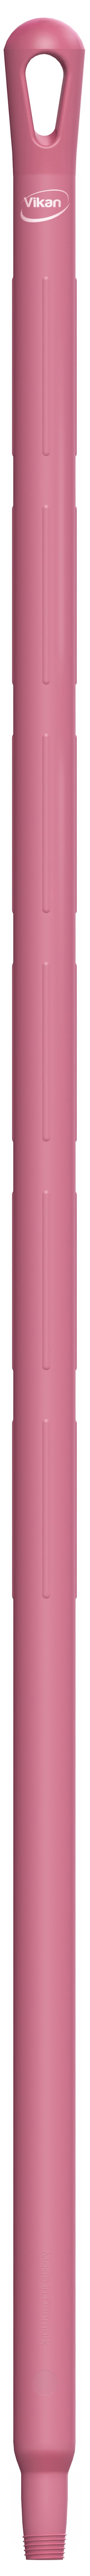 Vikan 29601 roze ultra hygiene kunststof steel 130cm